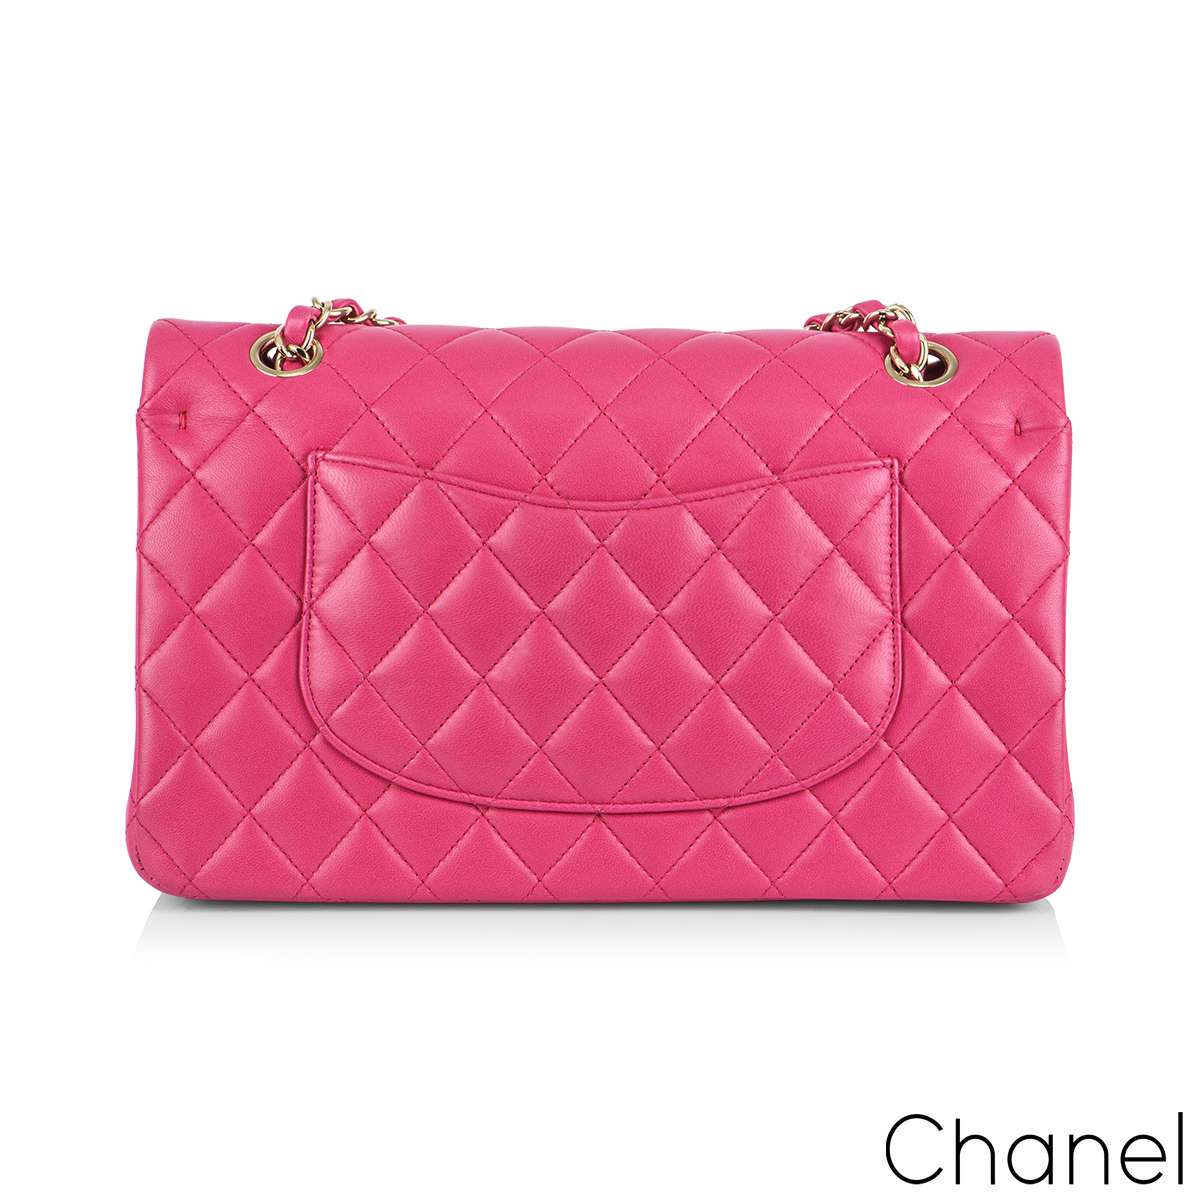 Chanel Style Bag -  UK